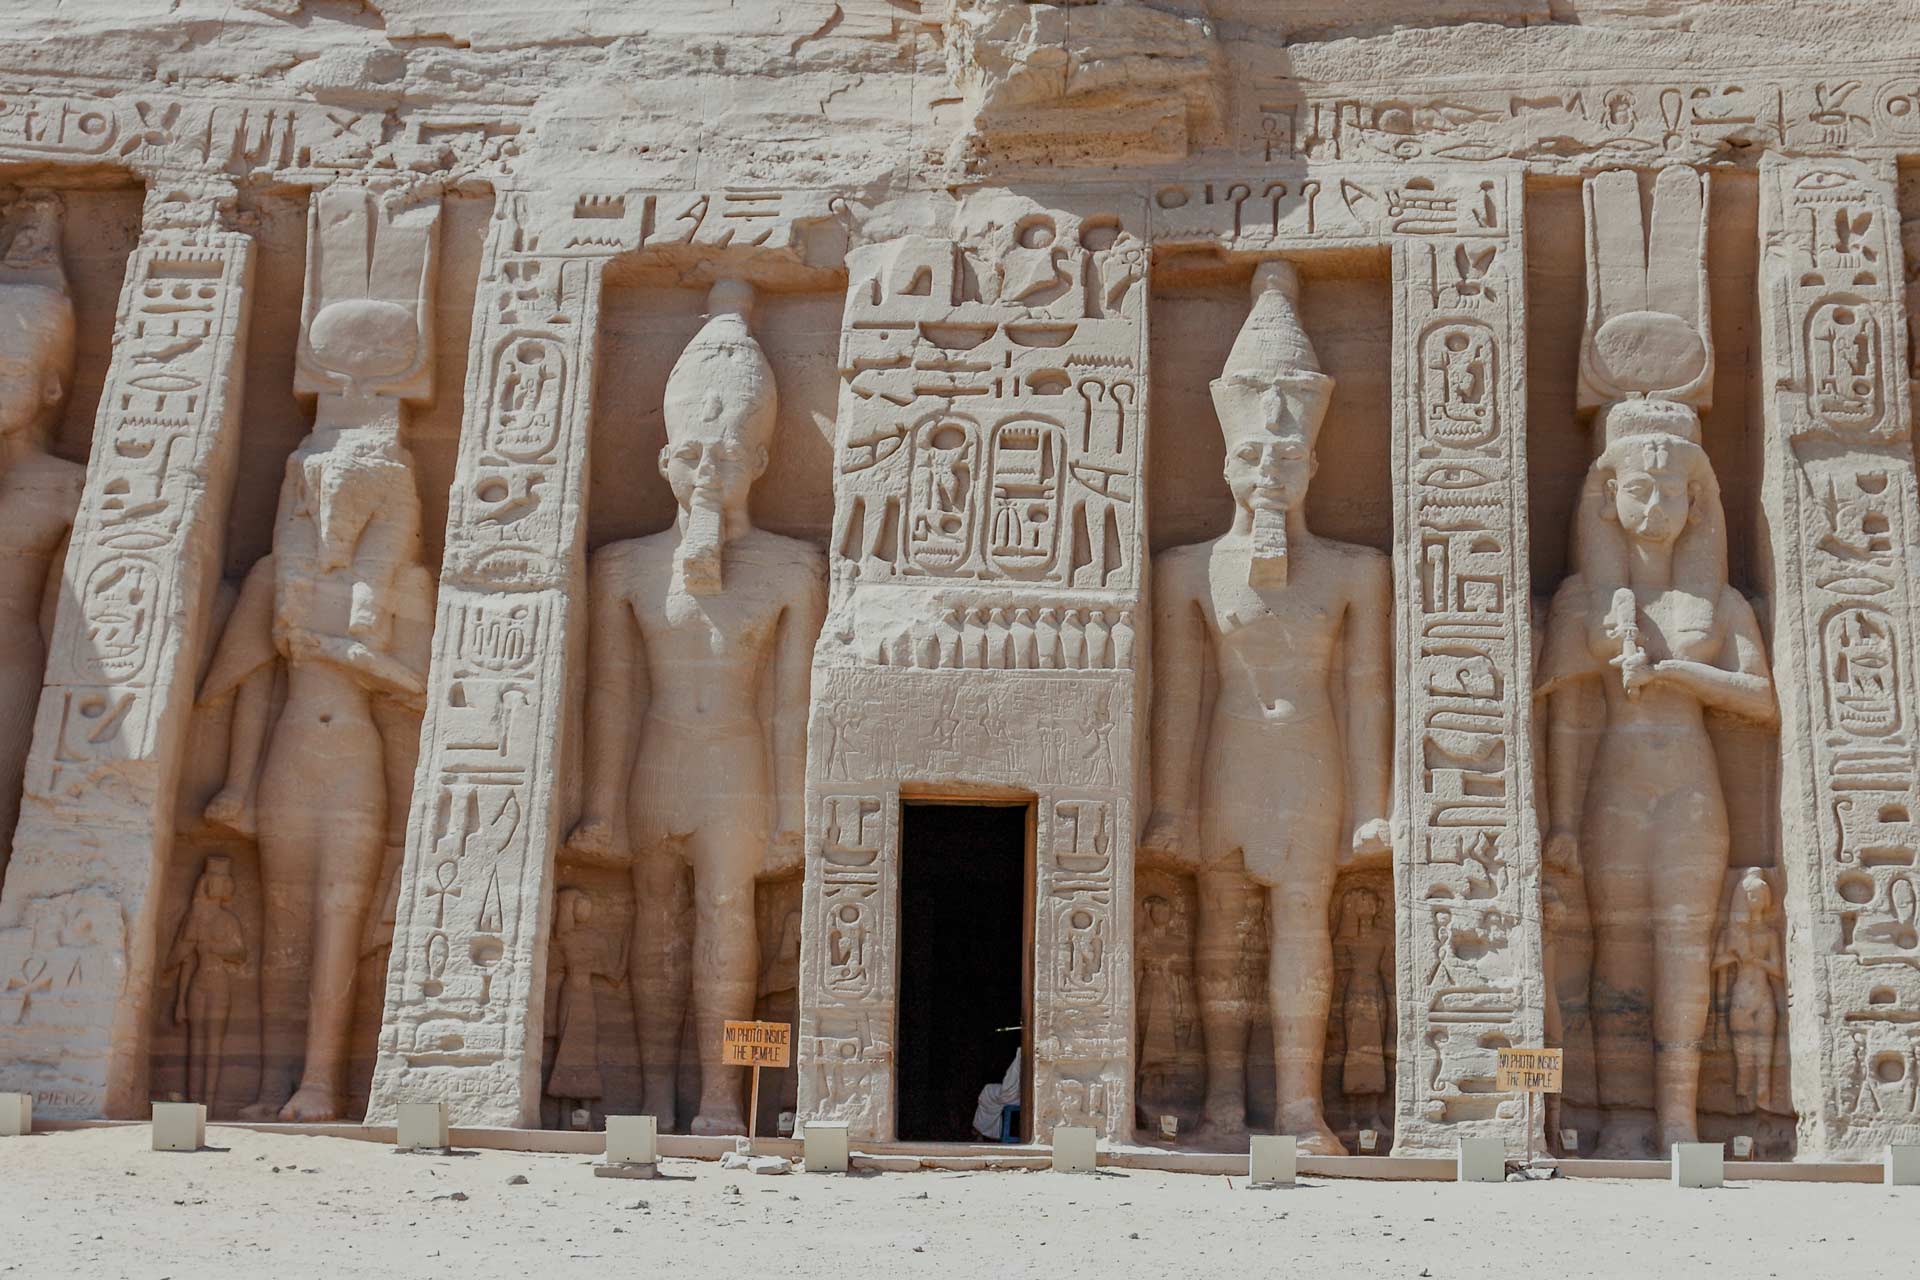 contiki tours egypt